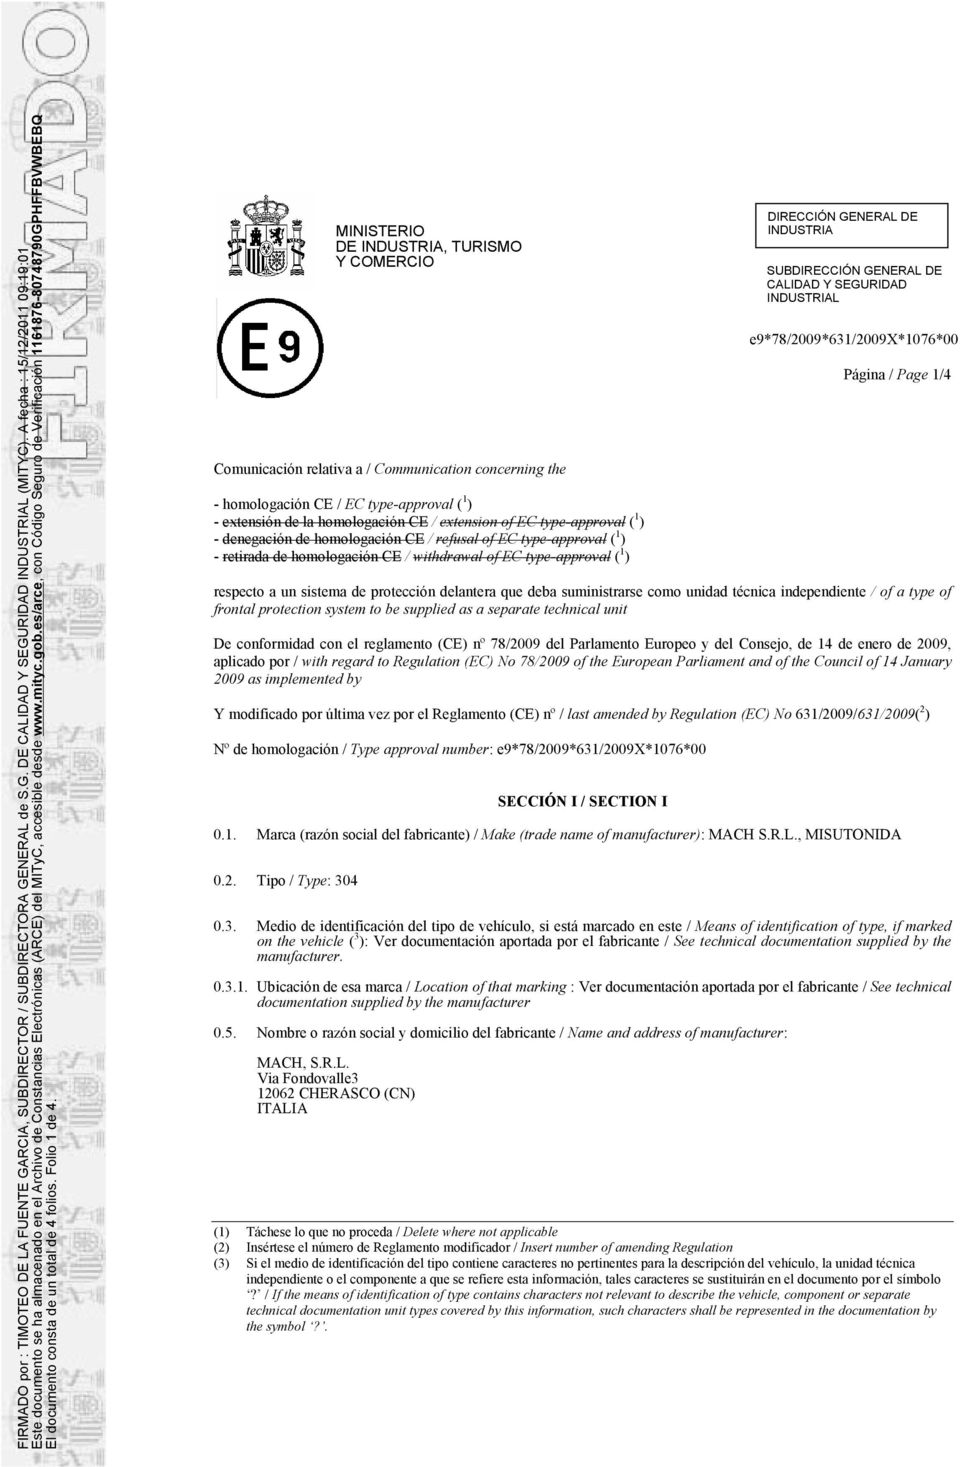 homologación CE / refusal of EC type-approval ( 1 ) - retirada de homologación CE / withdrawal of EC type-approval ( 1 ) L Página / Page 1/4 respecto a un sistema de protección delantera que deba